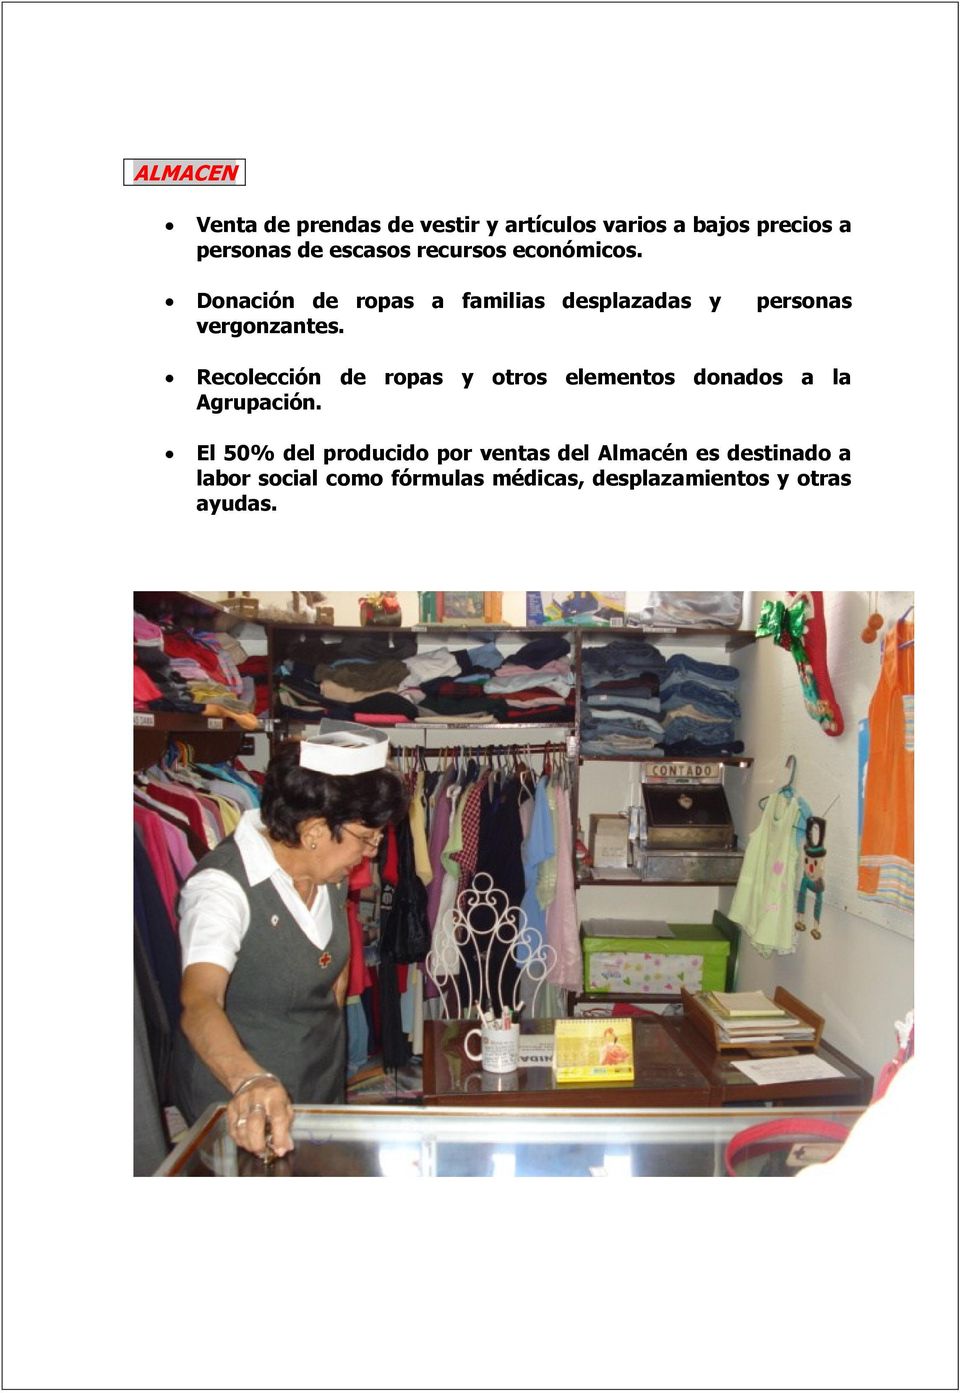 Recolección de ropas y otros elementos donados a la Agrupación.